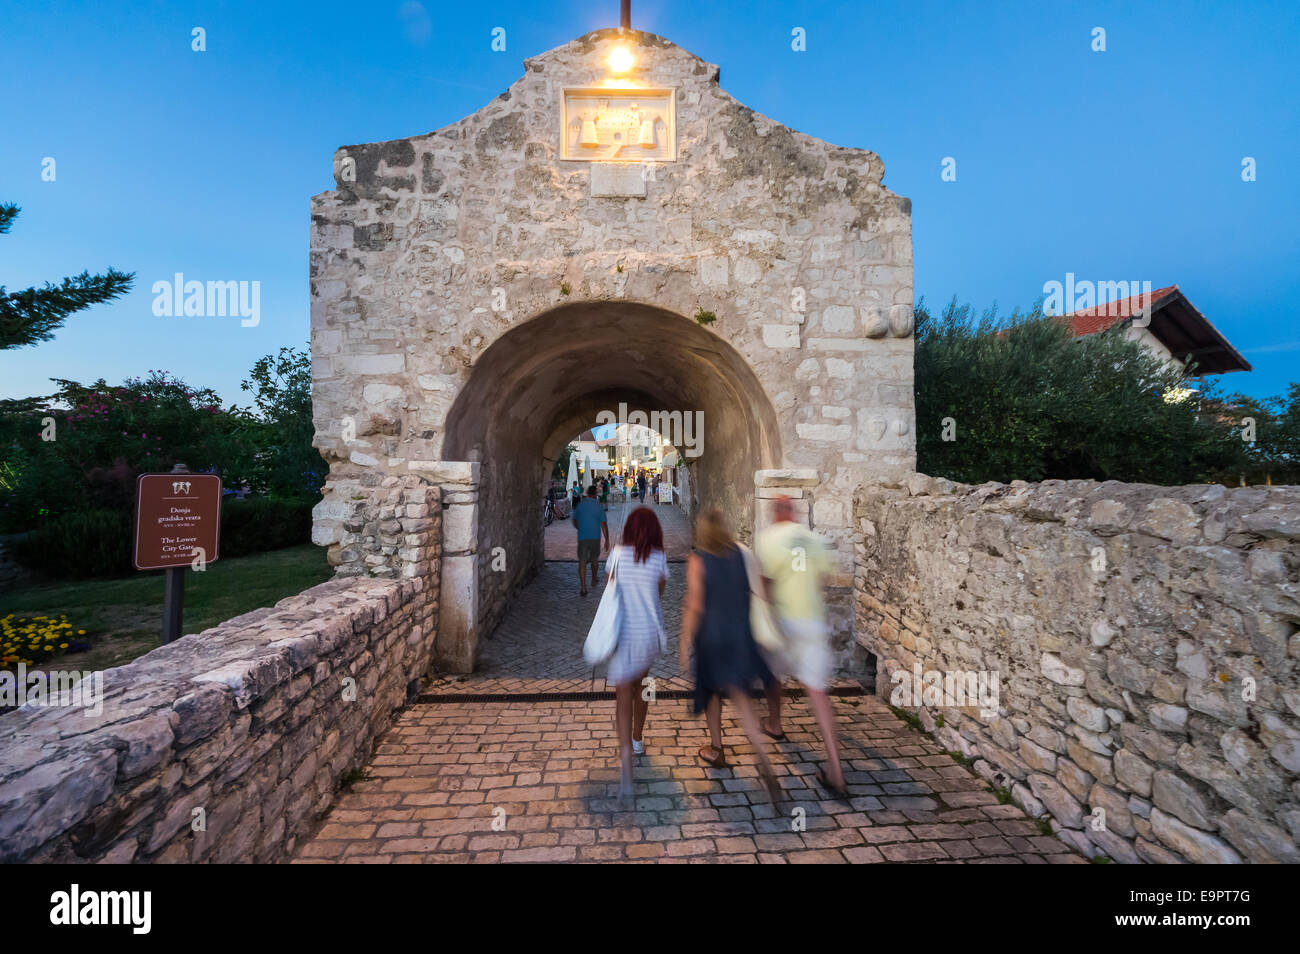 Nin, ville de rois croates, avec une culture riche et belle sondages. Situé près de Zadar sur la côte Adriatique. Banque D'Images